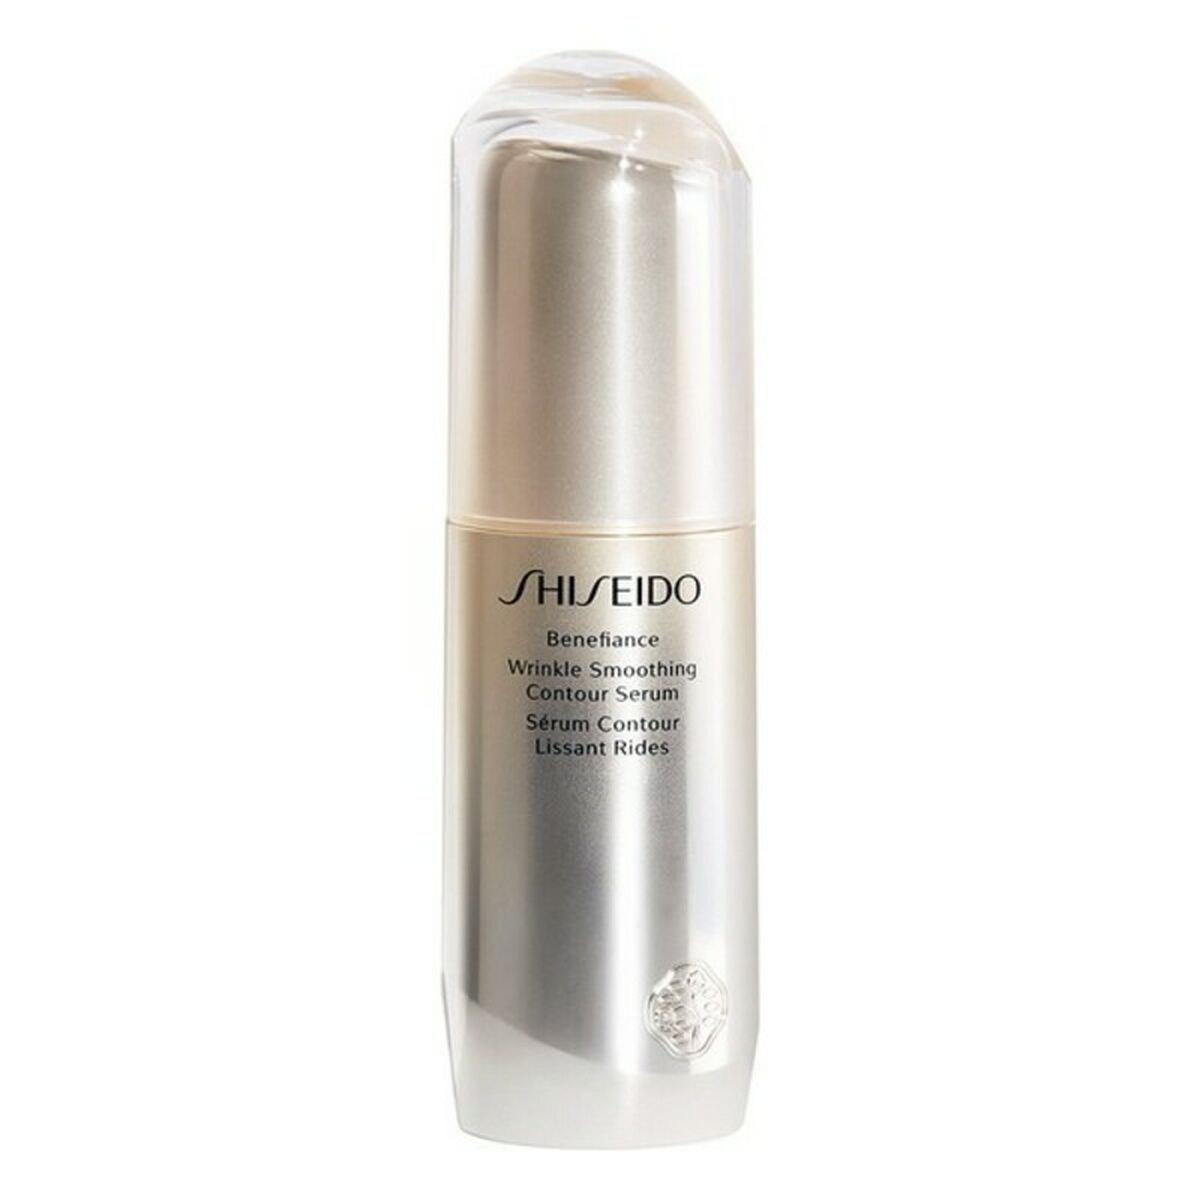 Sérum antirides Benefiance Wrinkle Smoothing Shiseido (30 ml)